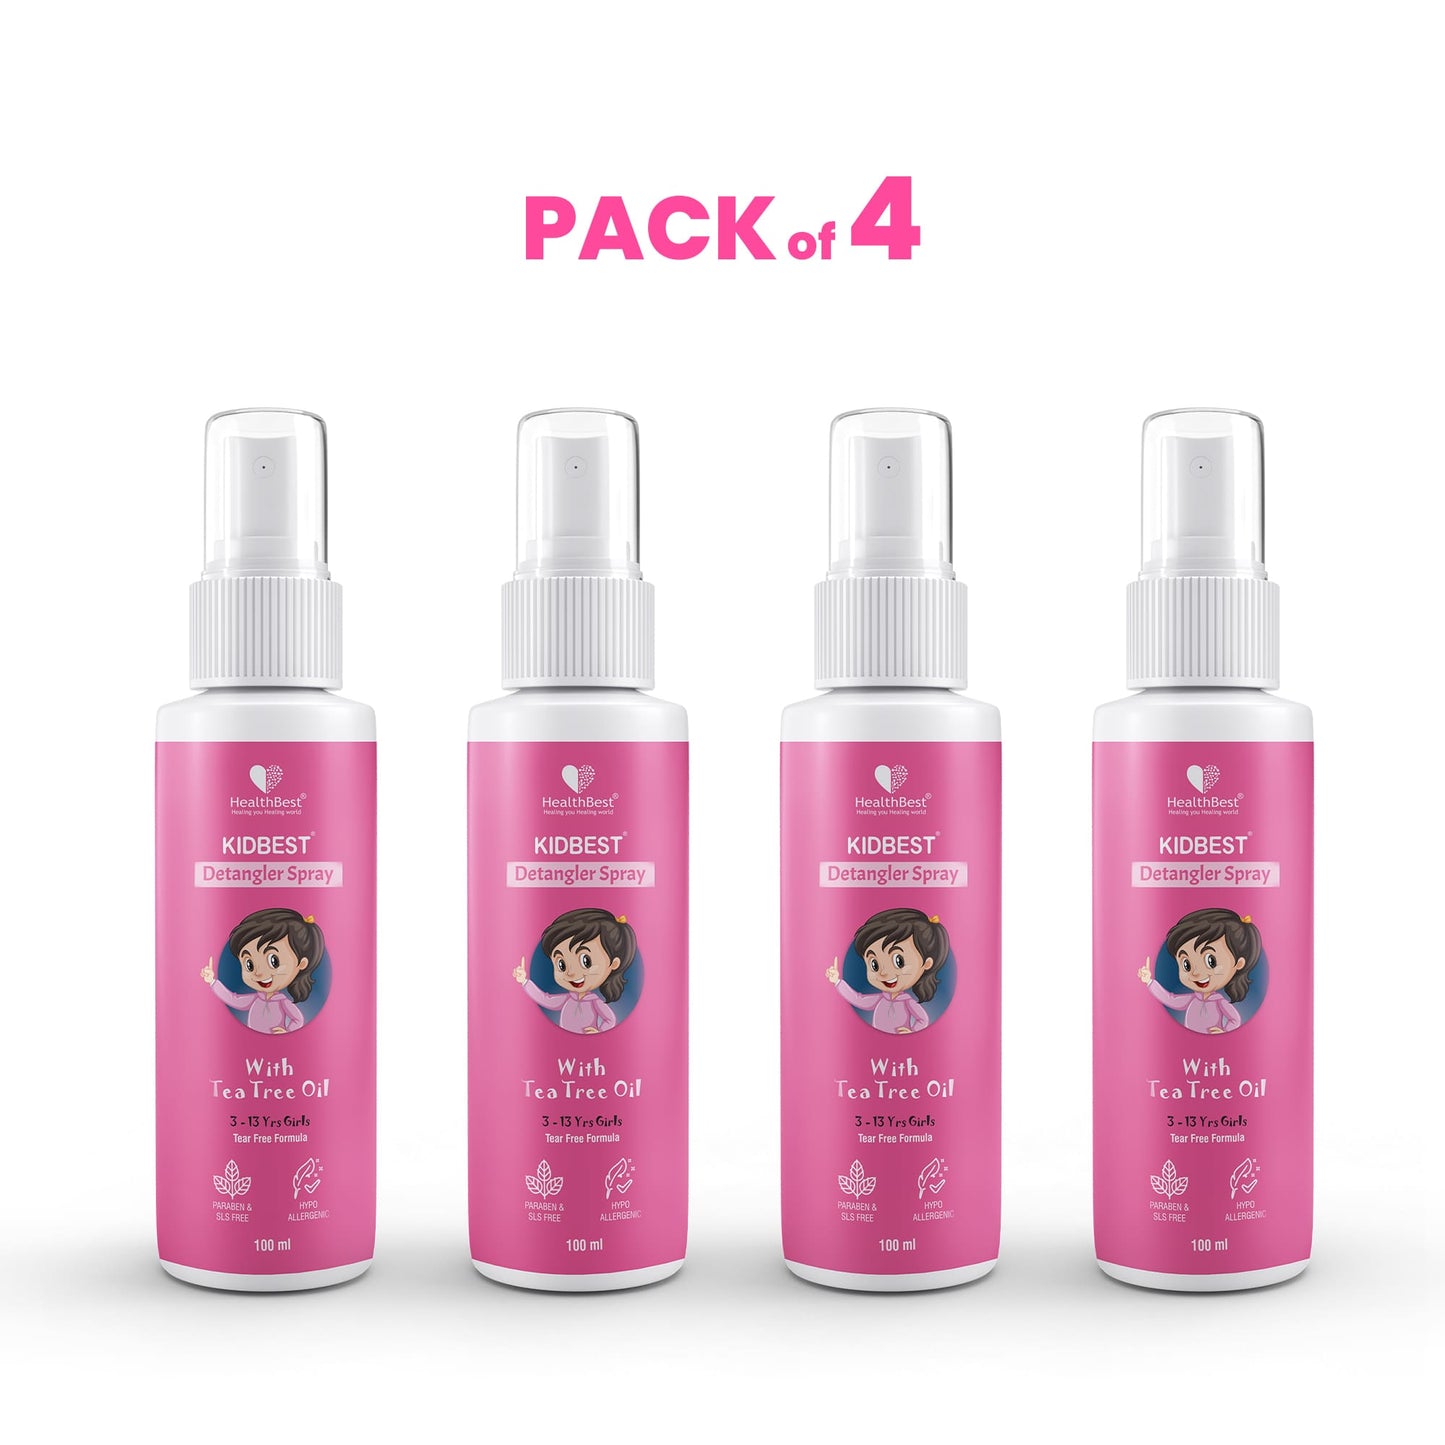 HealthBest Kidbest Detangler Spray For Kids Hair Pack of 4